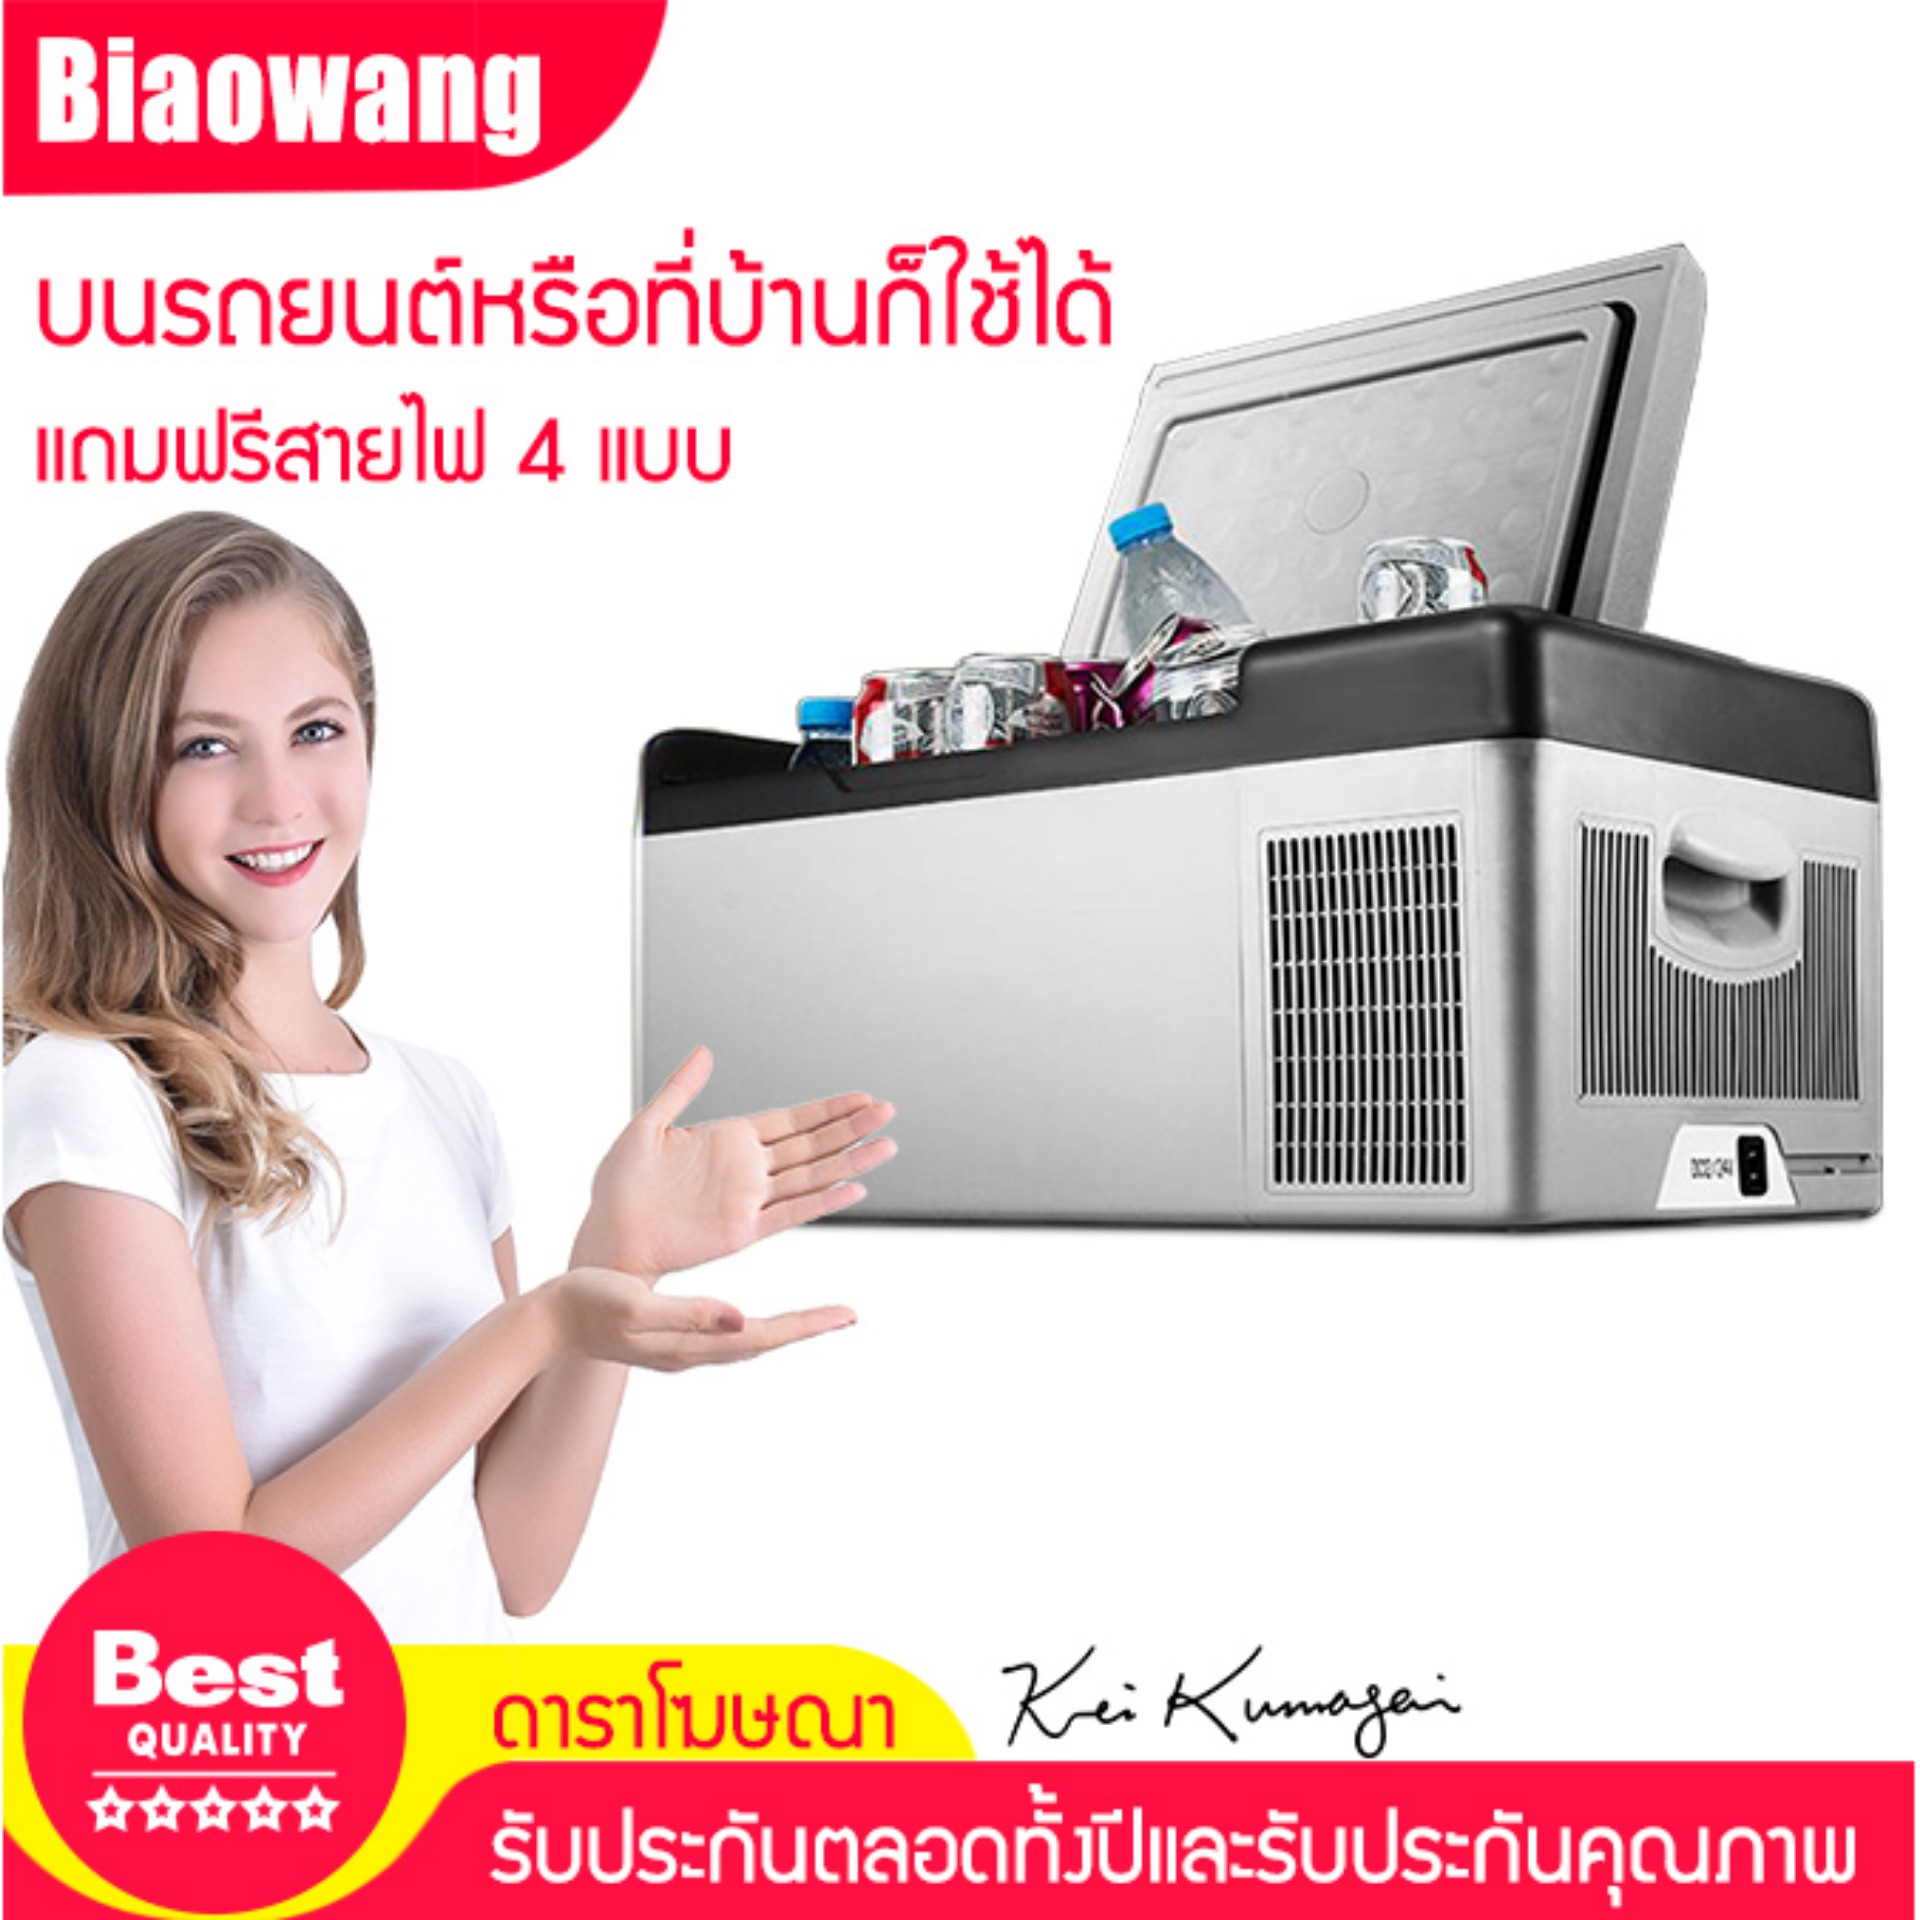 Biaowang ตู้เย็นสำหรับใช้ภายในรถยนต์หรือจะใช้ในบ้านก็ได้แรงดันไฟขนาด12V/24V สามารถบรรจุได้ถึง 20L